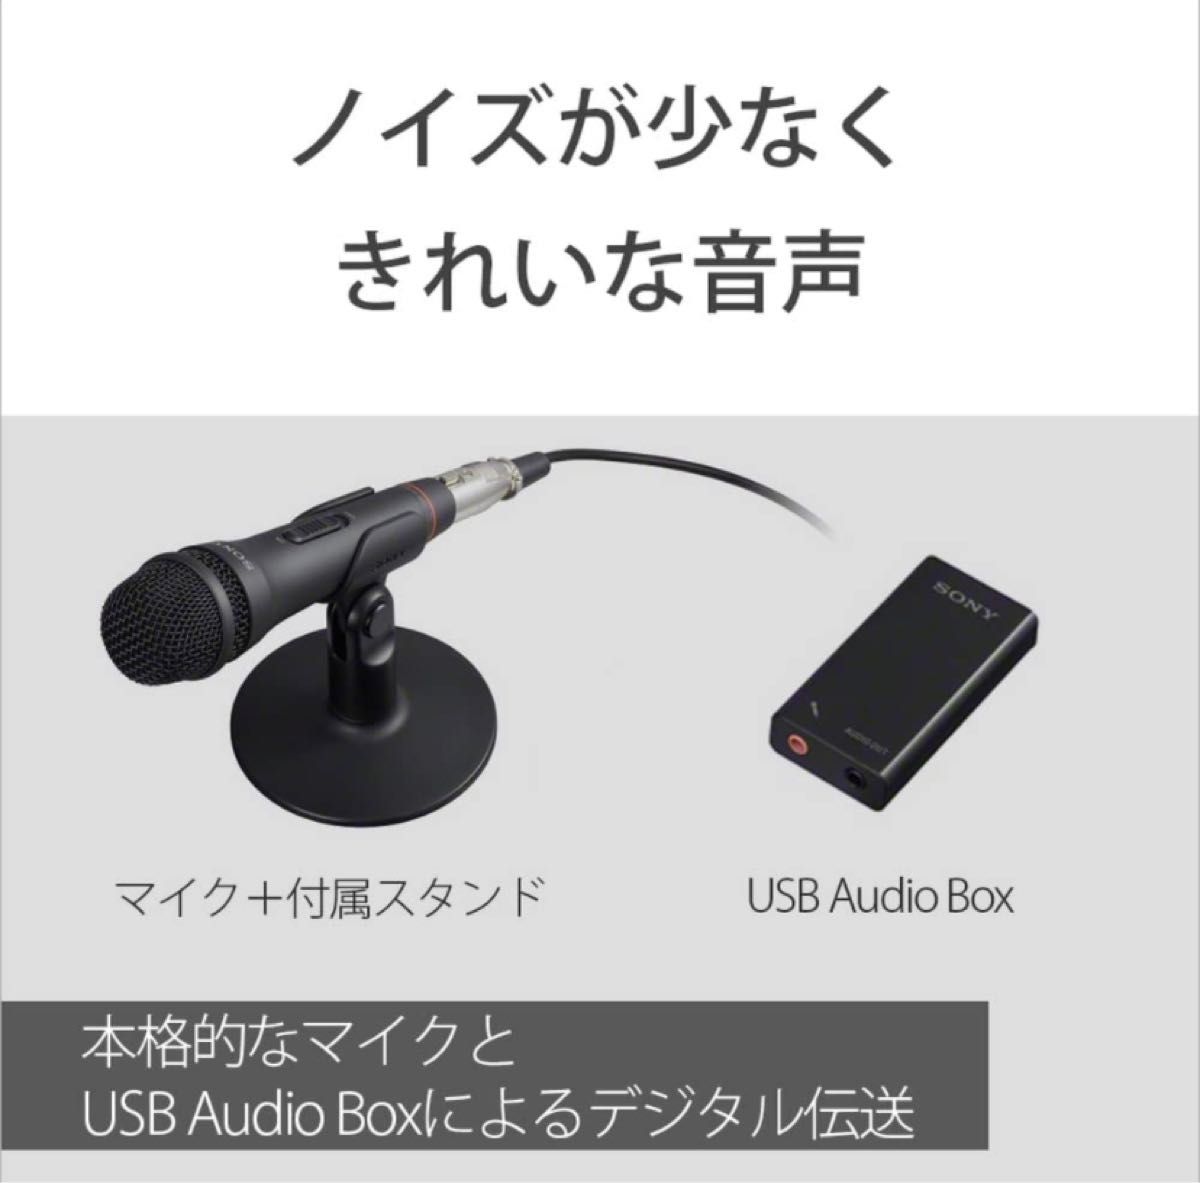 ☆決算特価商品☆ ポップガード マイクガード コンデンサーマイク USB つば カラオケマイク